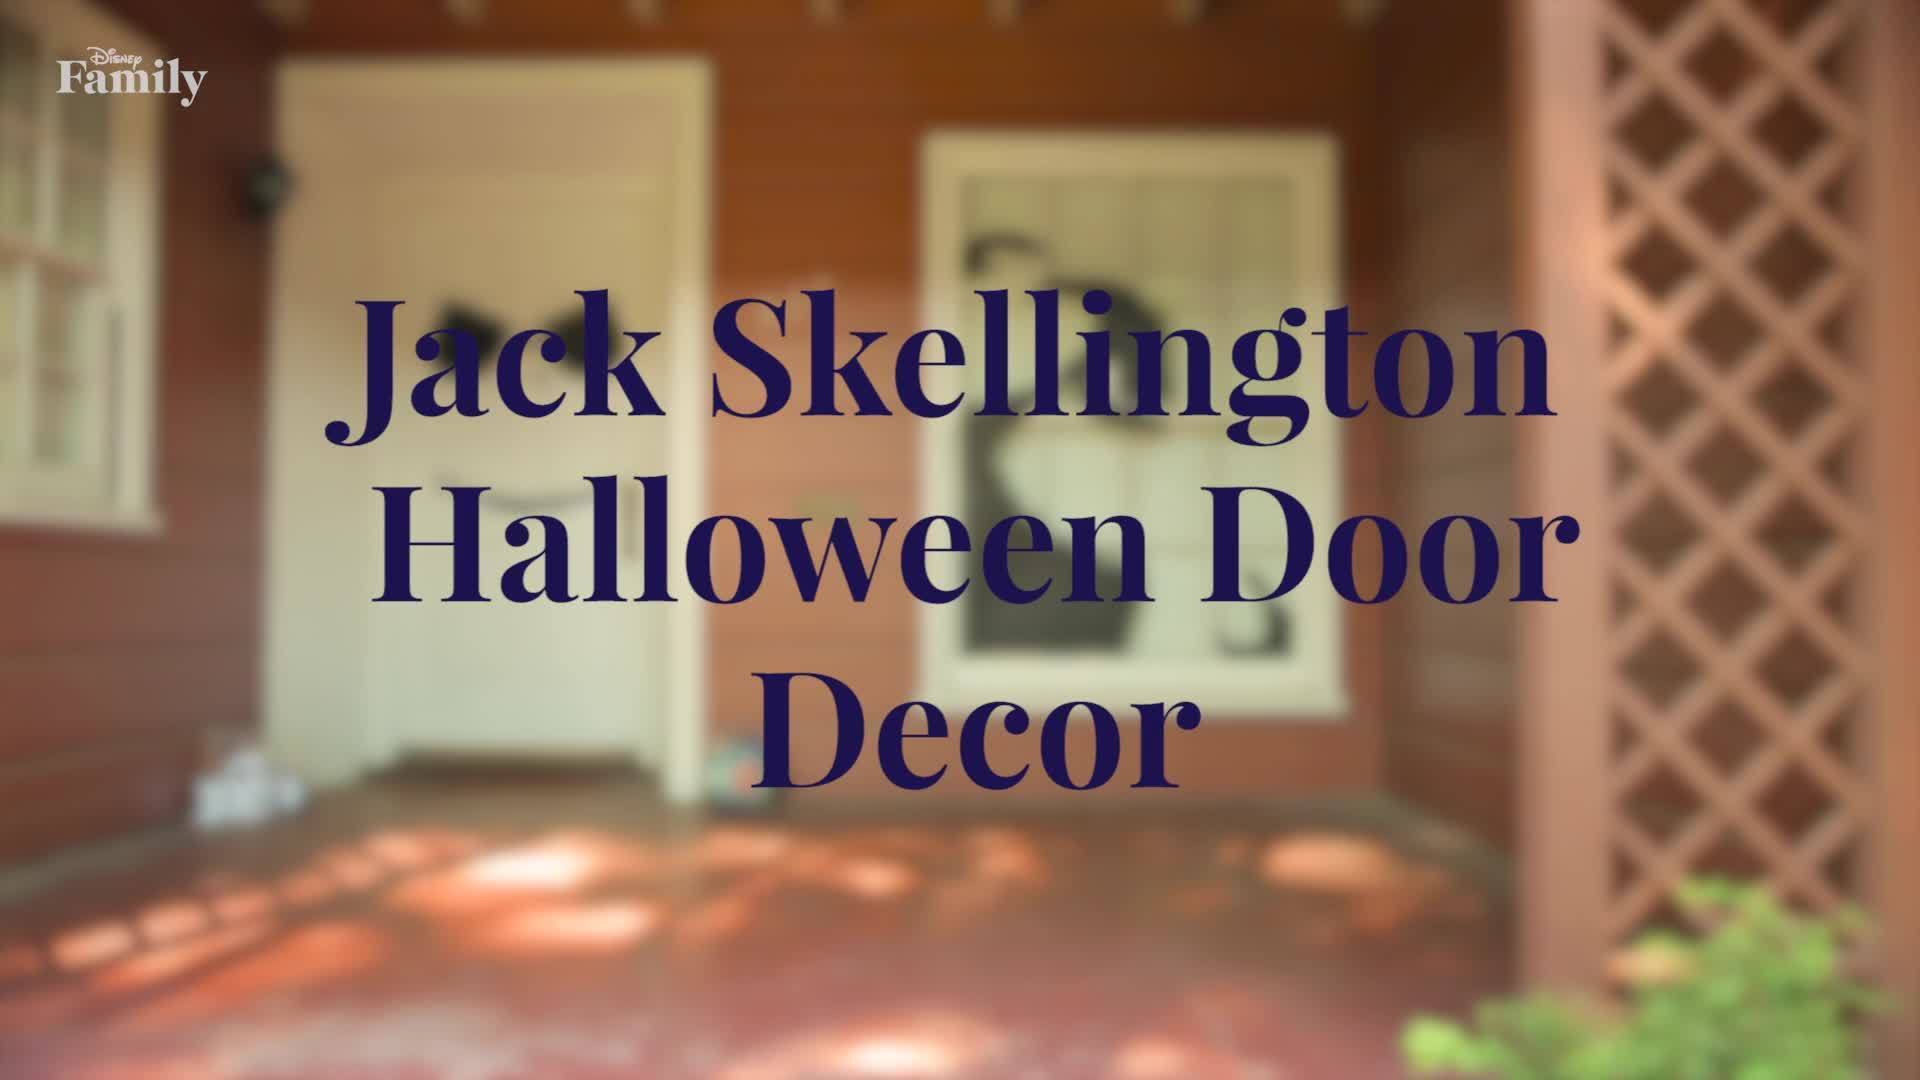 Jack Skellington Halloween Door Decor | Disney Family